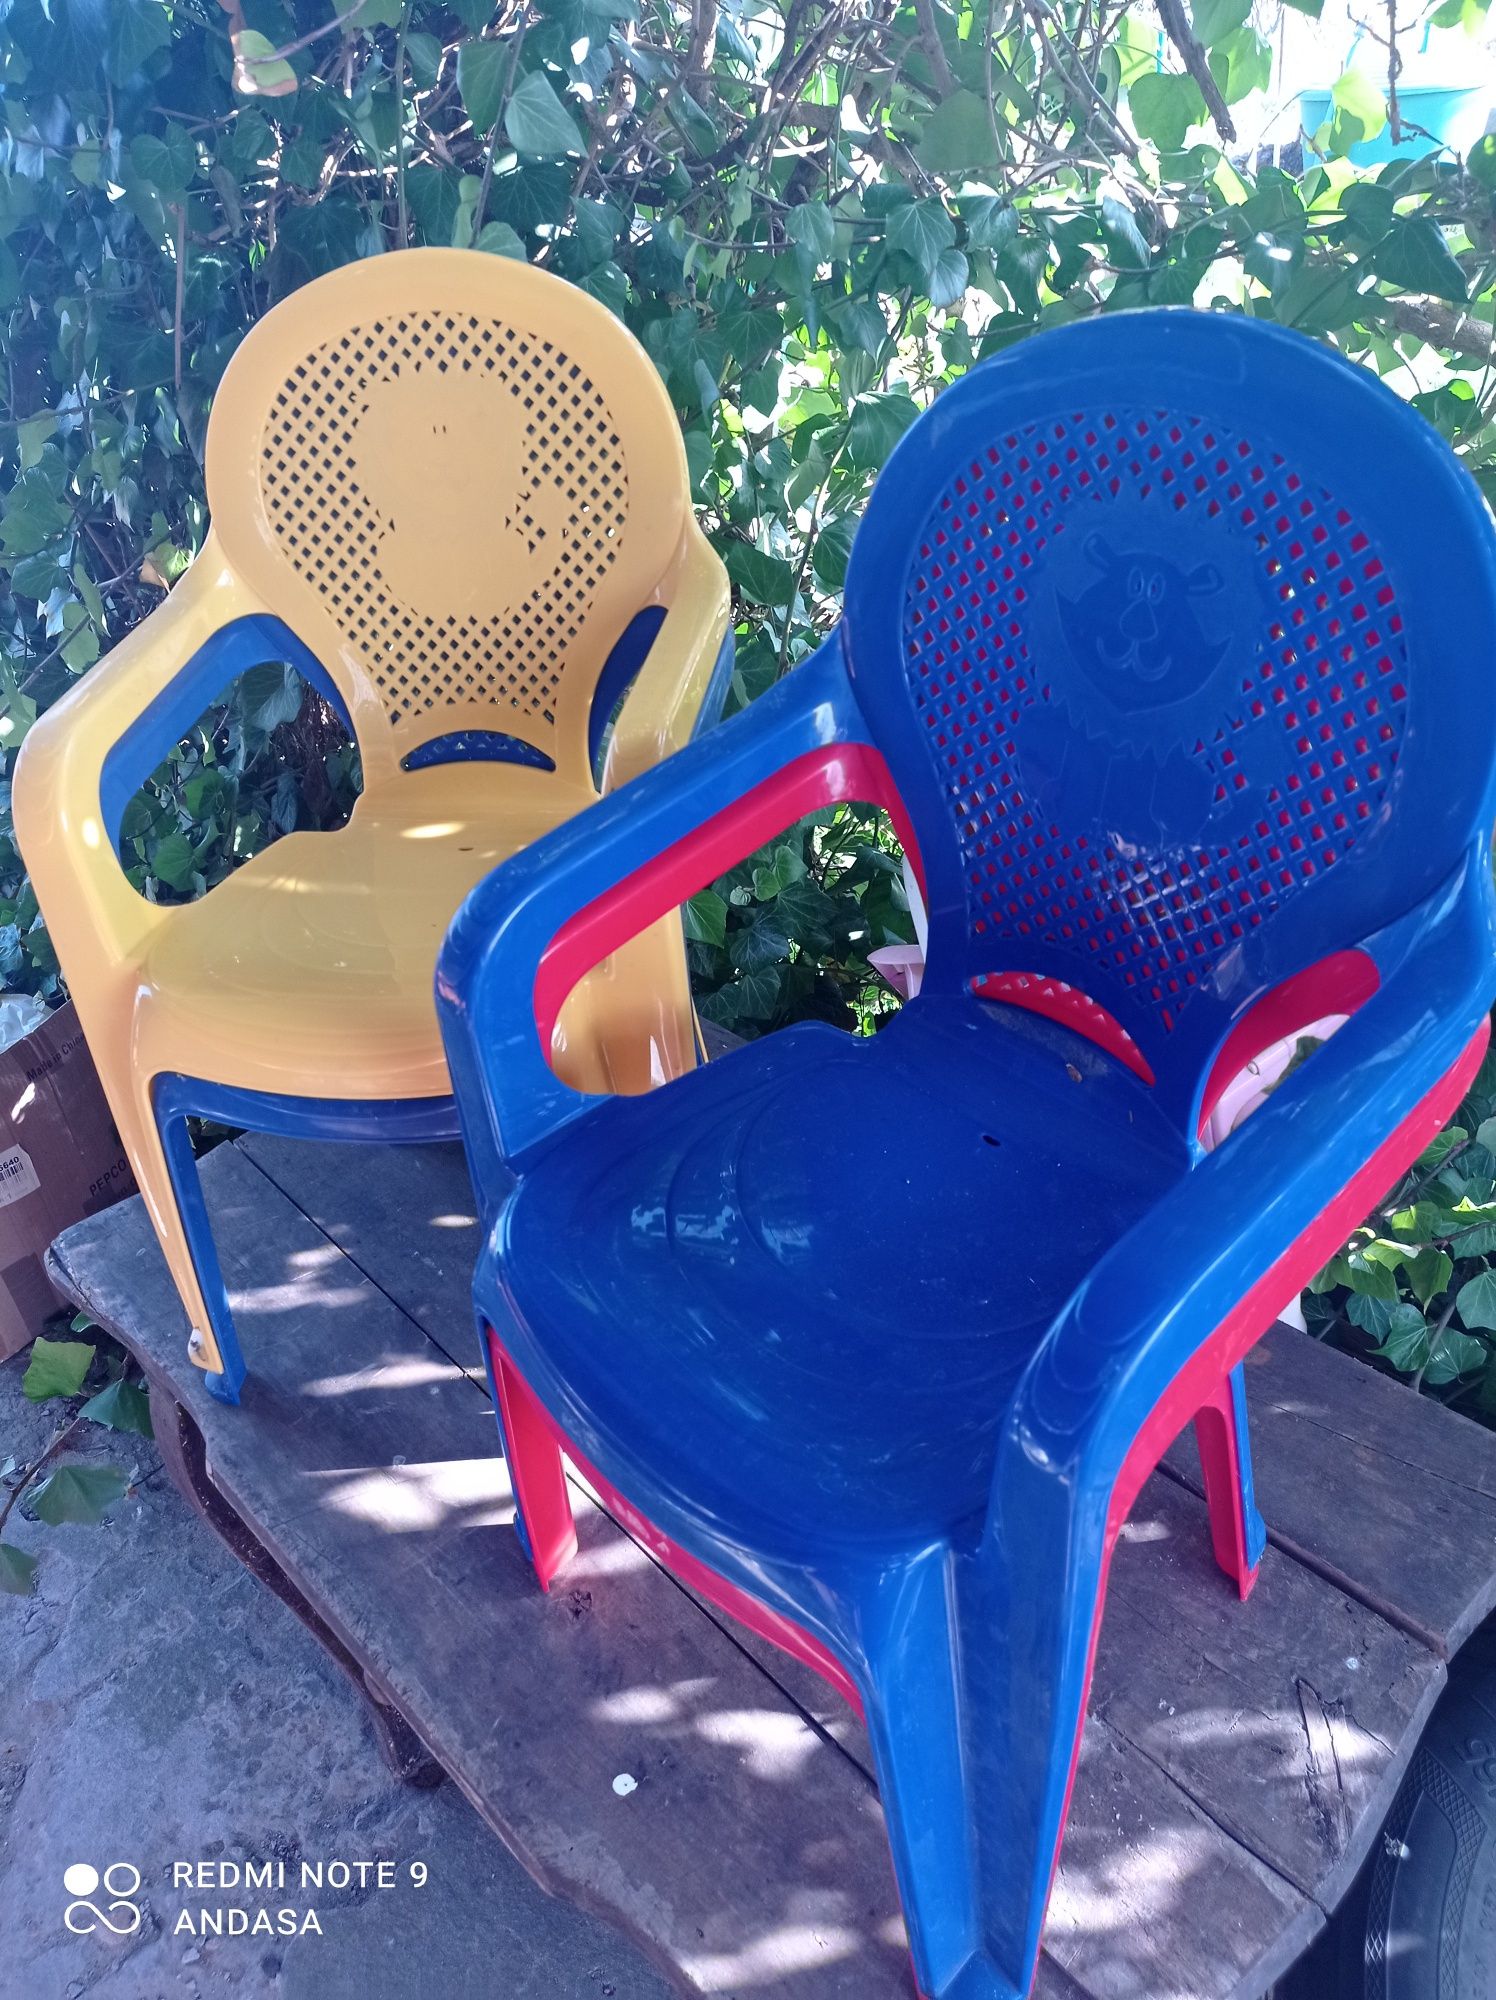 Krzesełka plastikowe dla dzieci